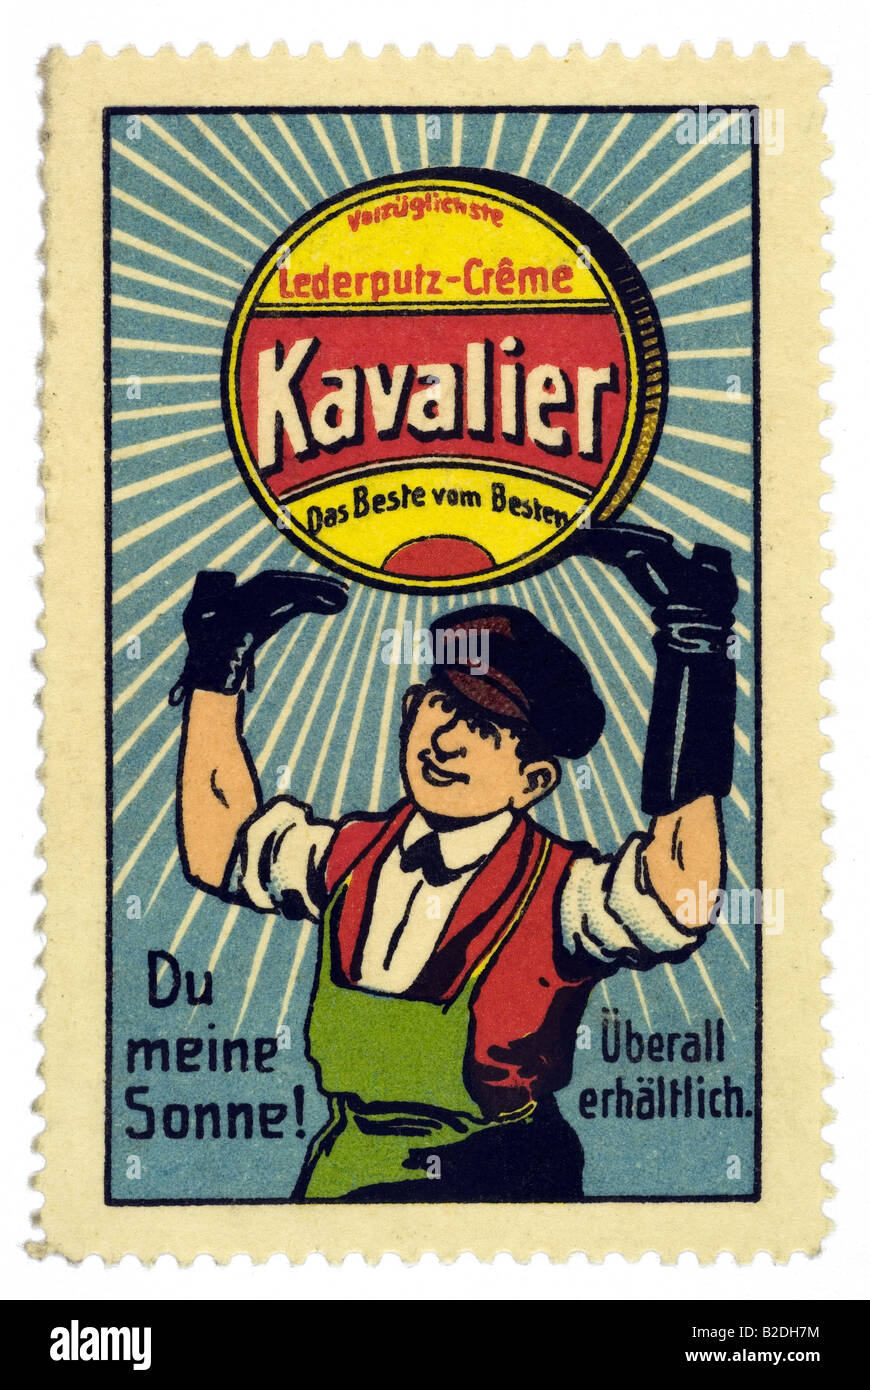 trading stamp Vorzüglichste Lederputz Creme Kavalier das Beste vom Besten Du meine Sonne Überall erhältlich Stock Photo